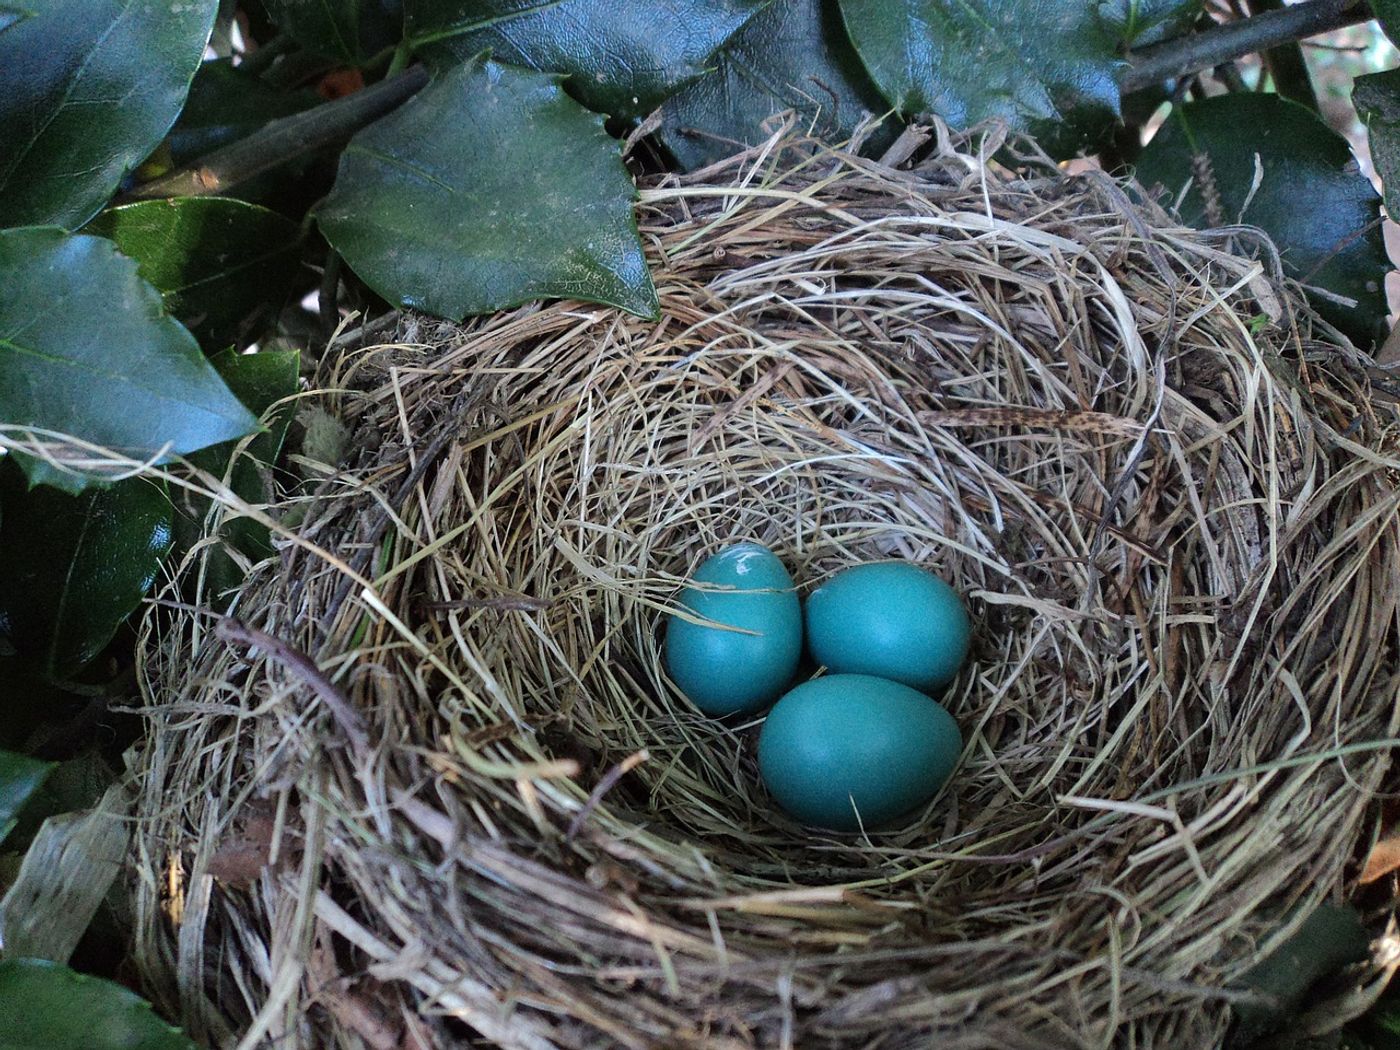 A nest full of eggs.